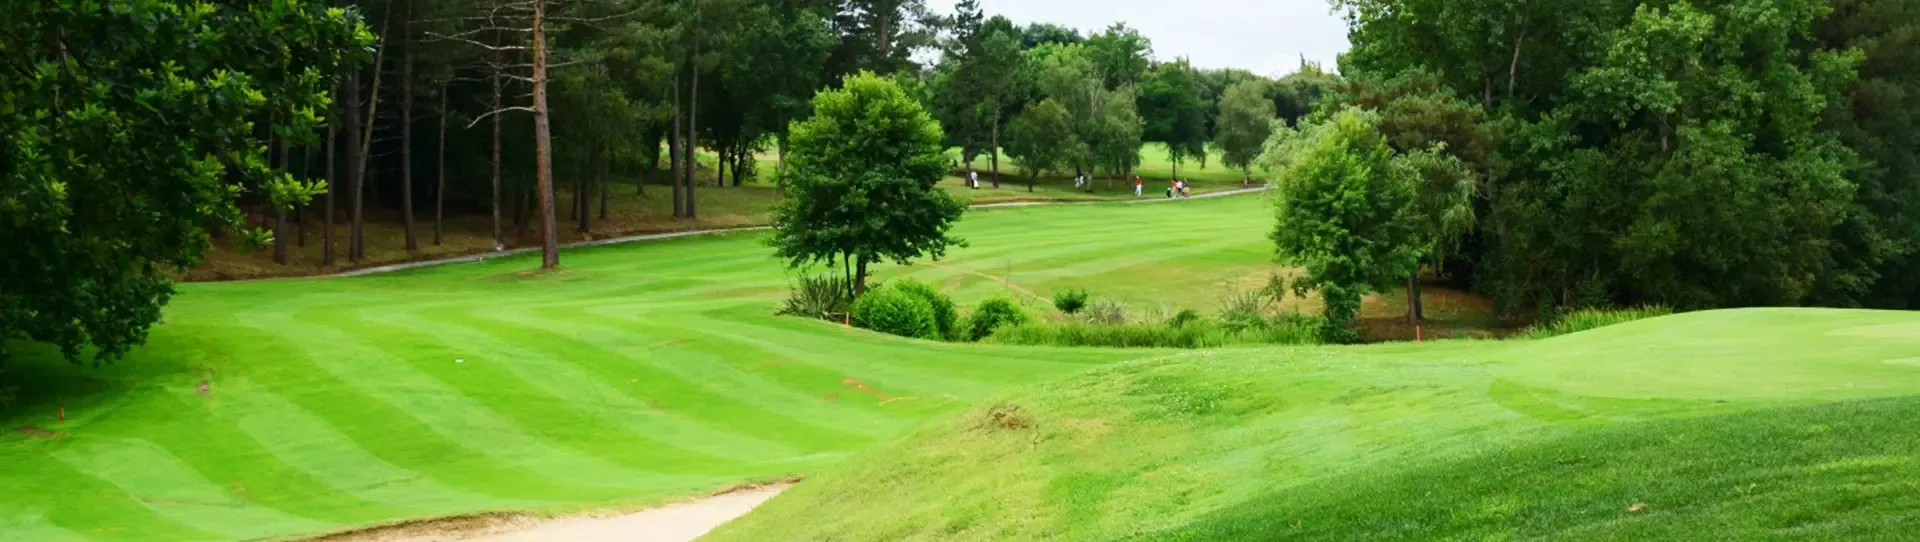 Spain golf courses - Laukariz Golf Course - Photo 2